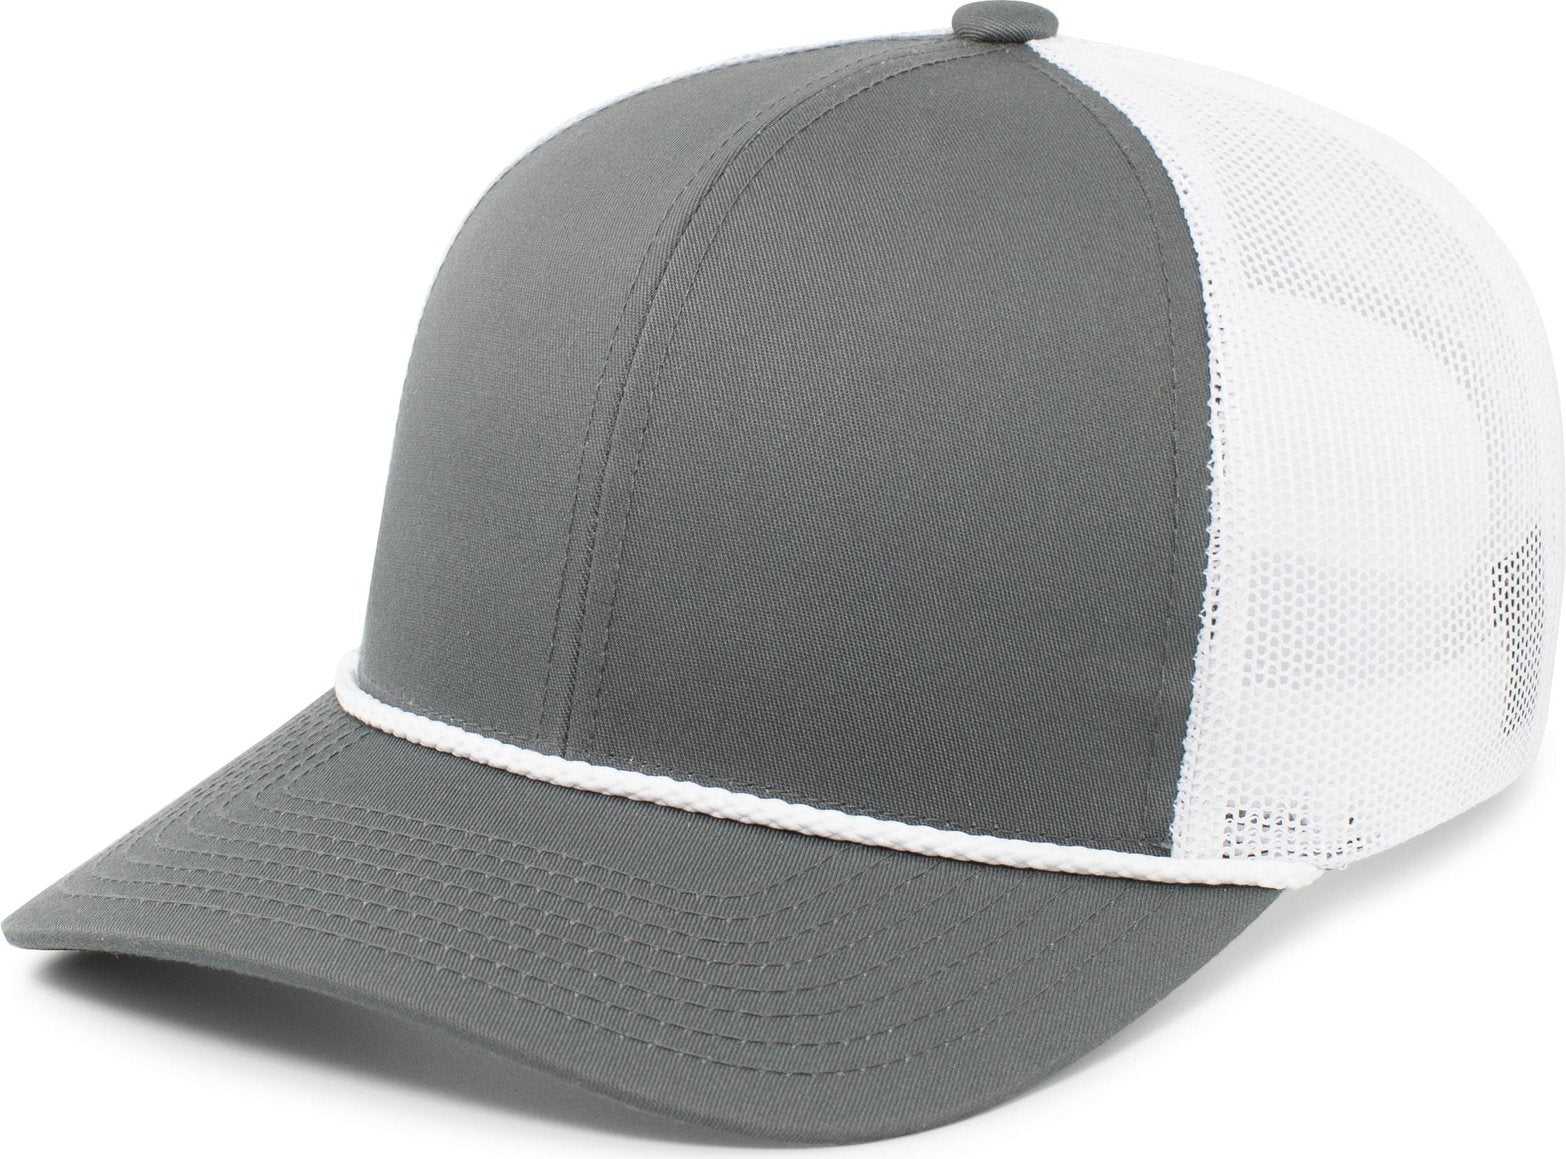 Pacific Headwear 104BR Trucker Snapback Braid Cap - Graphite White Graphite - HIT a Double